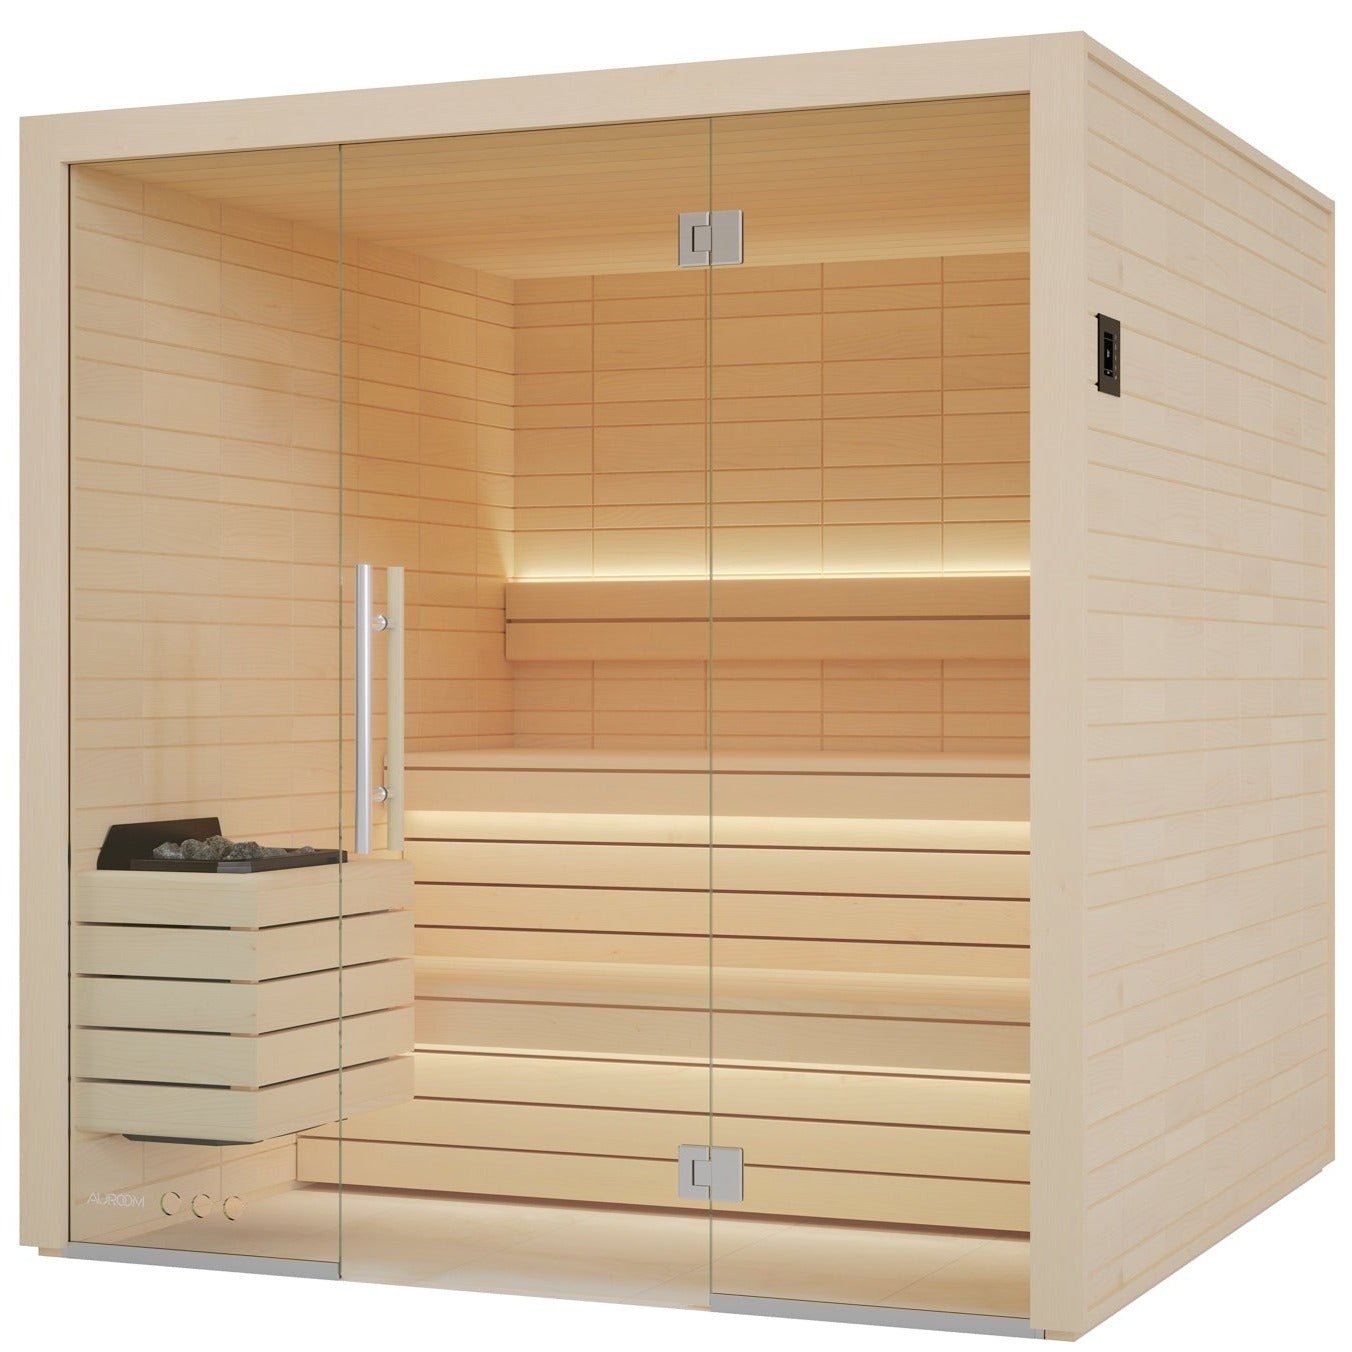 auroom-electa-indoor-cabin-sauna-kit